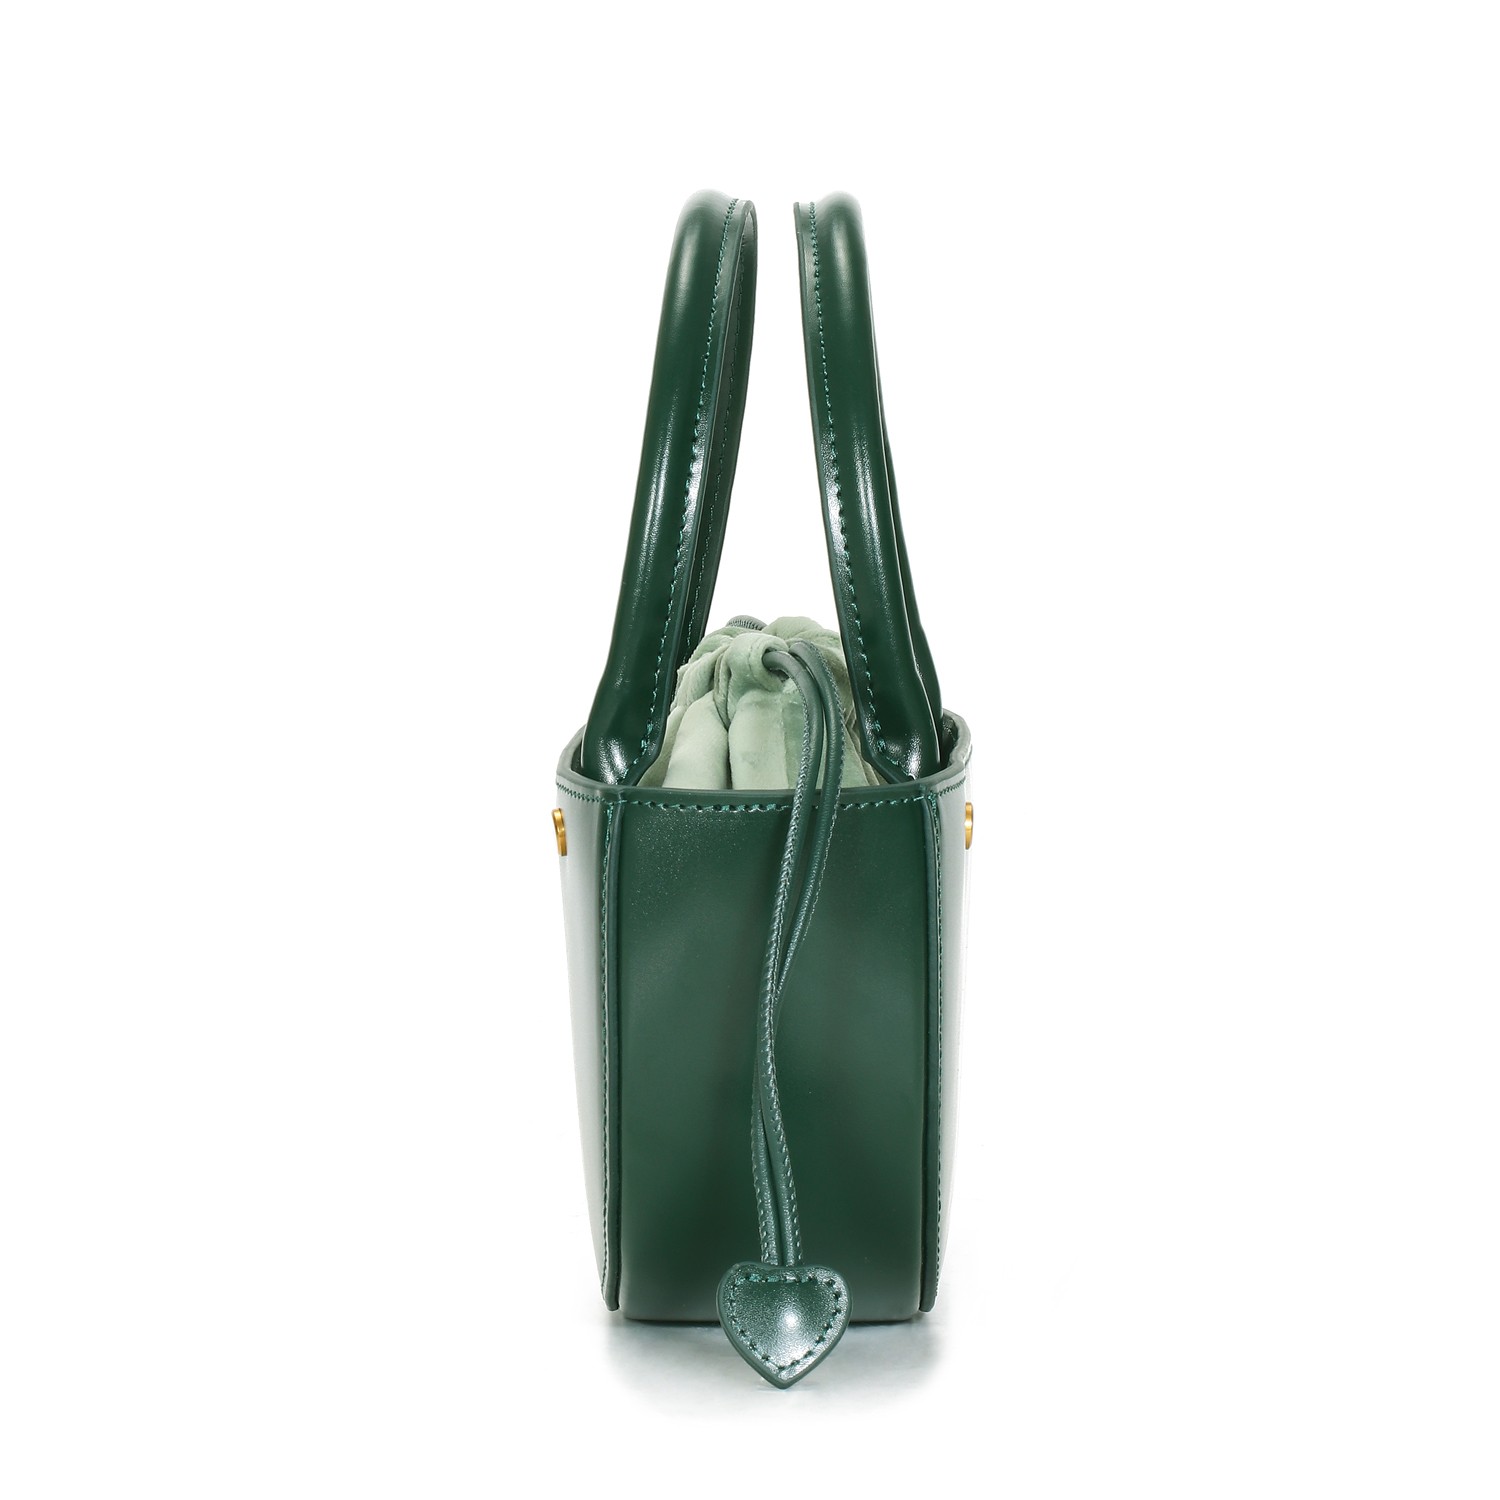 Leather saddle bags new trend design popular messenger bag all match one shoulder women